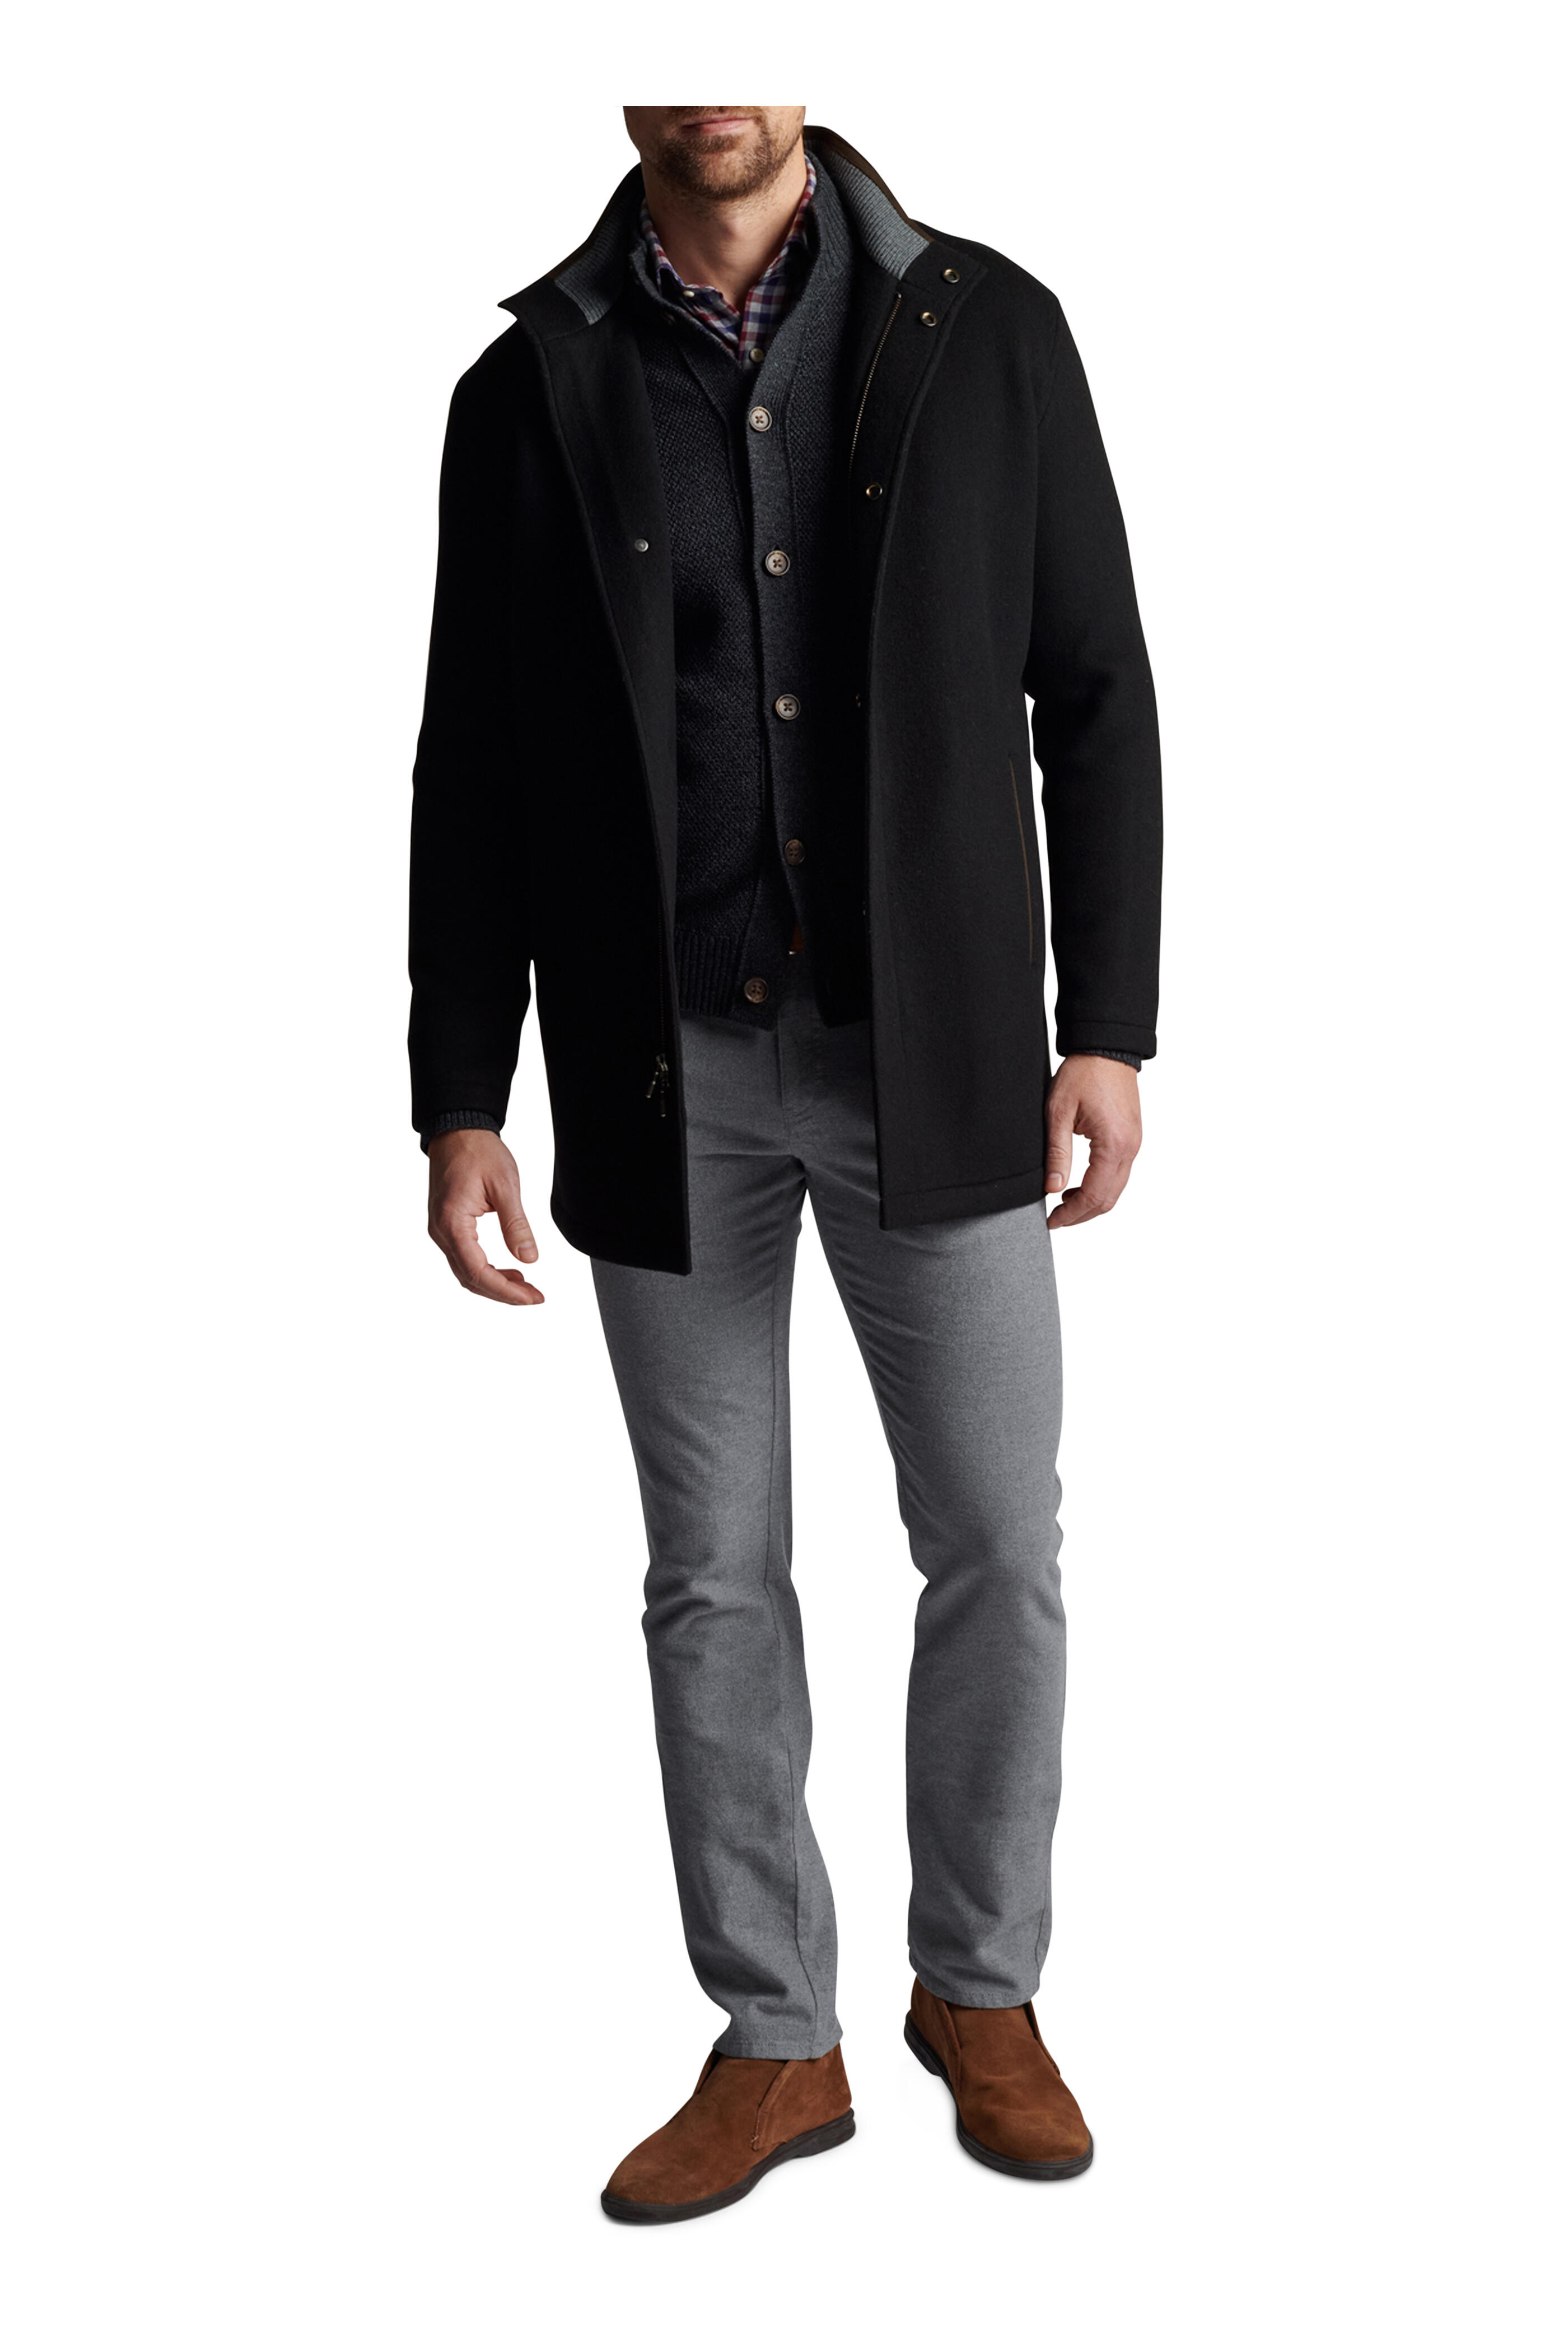 Peter Millar - Black Crown Flex Fleece City Coat